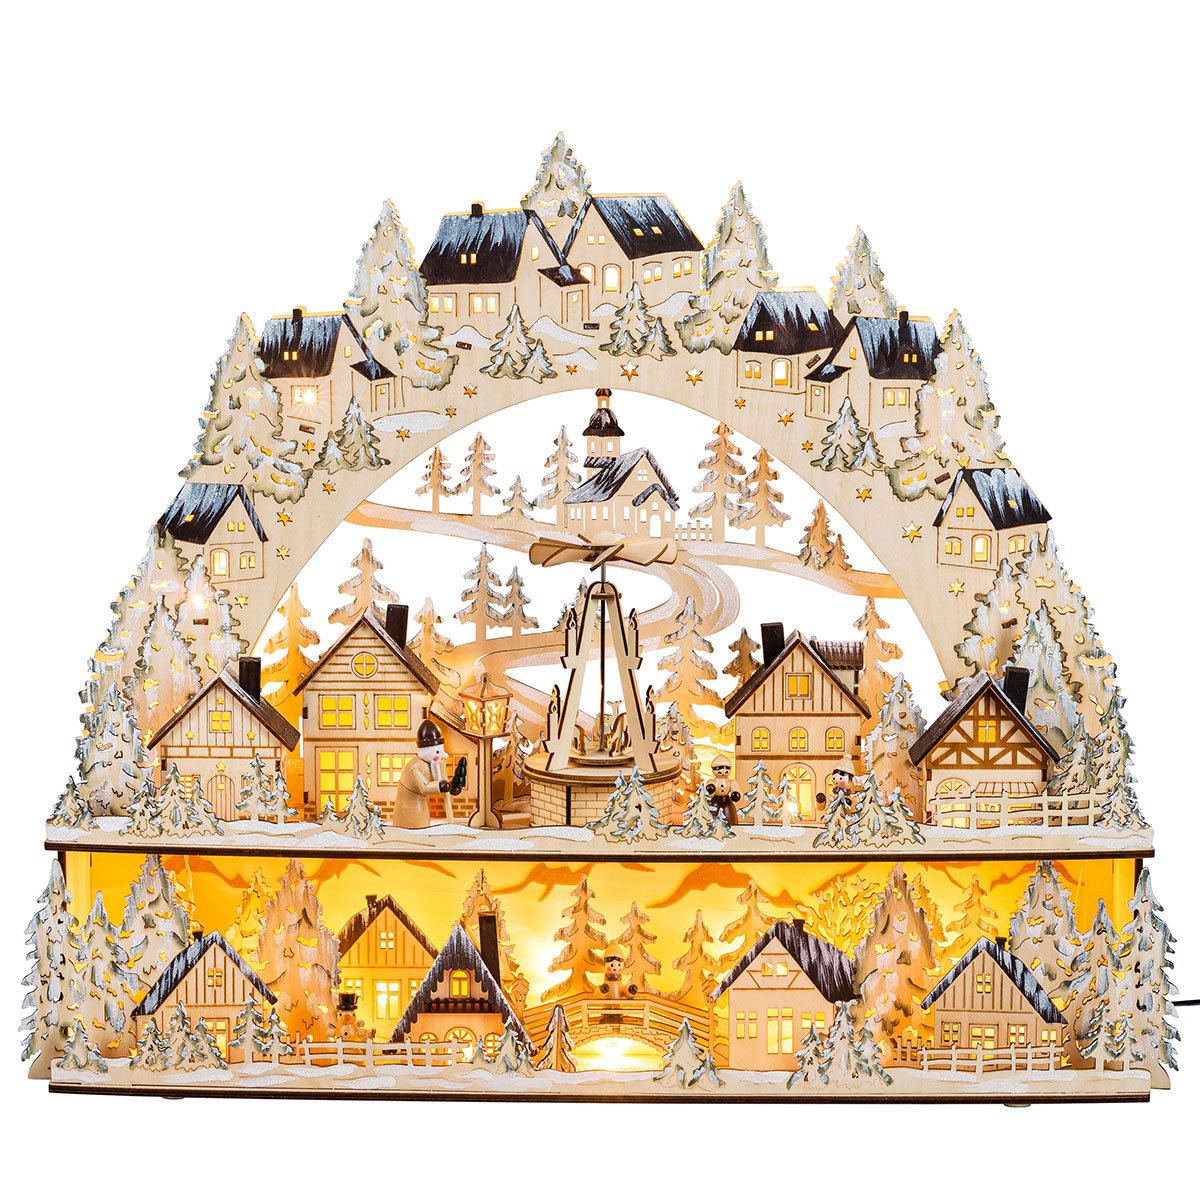 LED-Lichterbogen "Weihnachtsmarkt" mit beweglicher Pyramide
